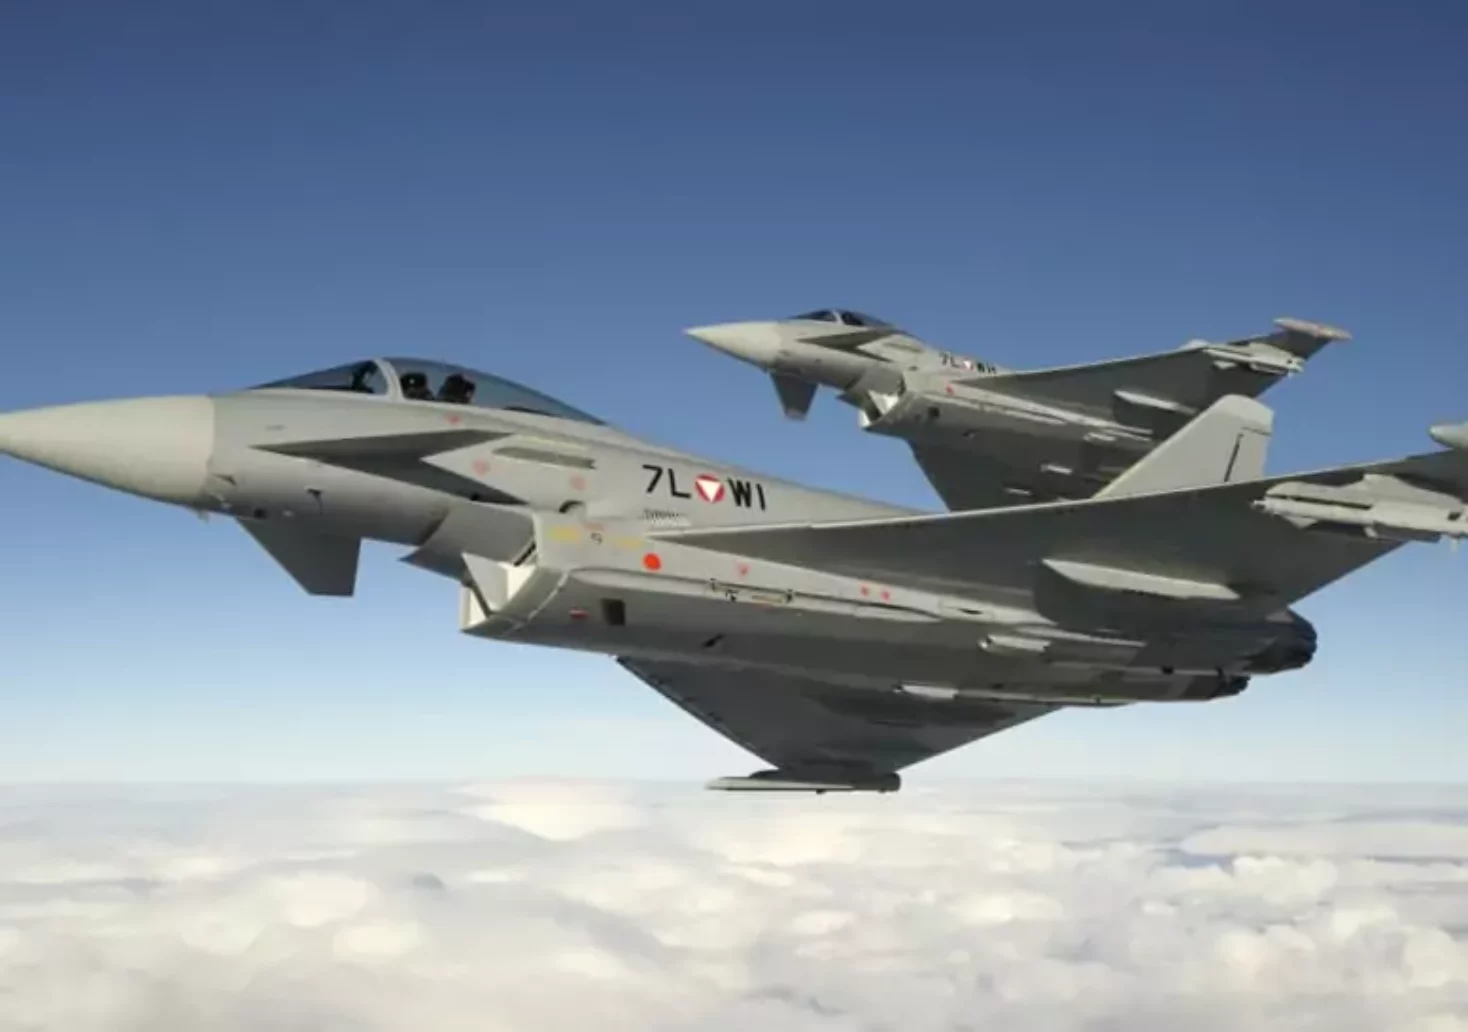 Bild auf 5min.at zeigt zwei Eurofighter-Flieger am Himmel.